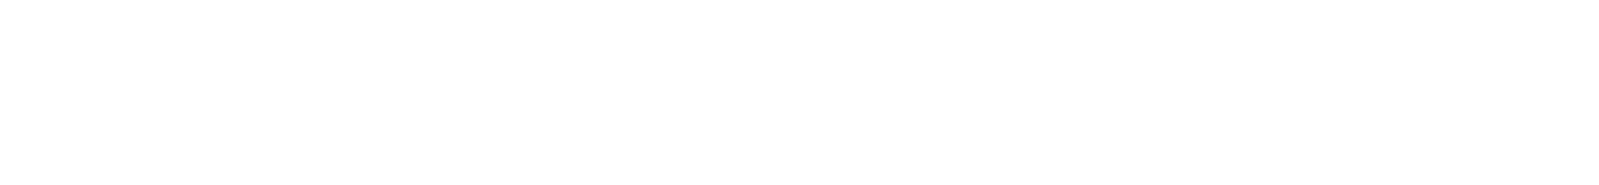 Eiken Chemical logo large for dark backgrounds (transparent PNG)